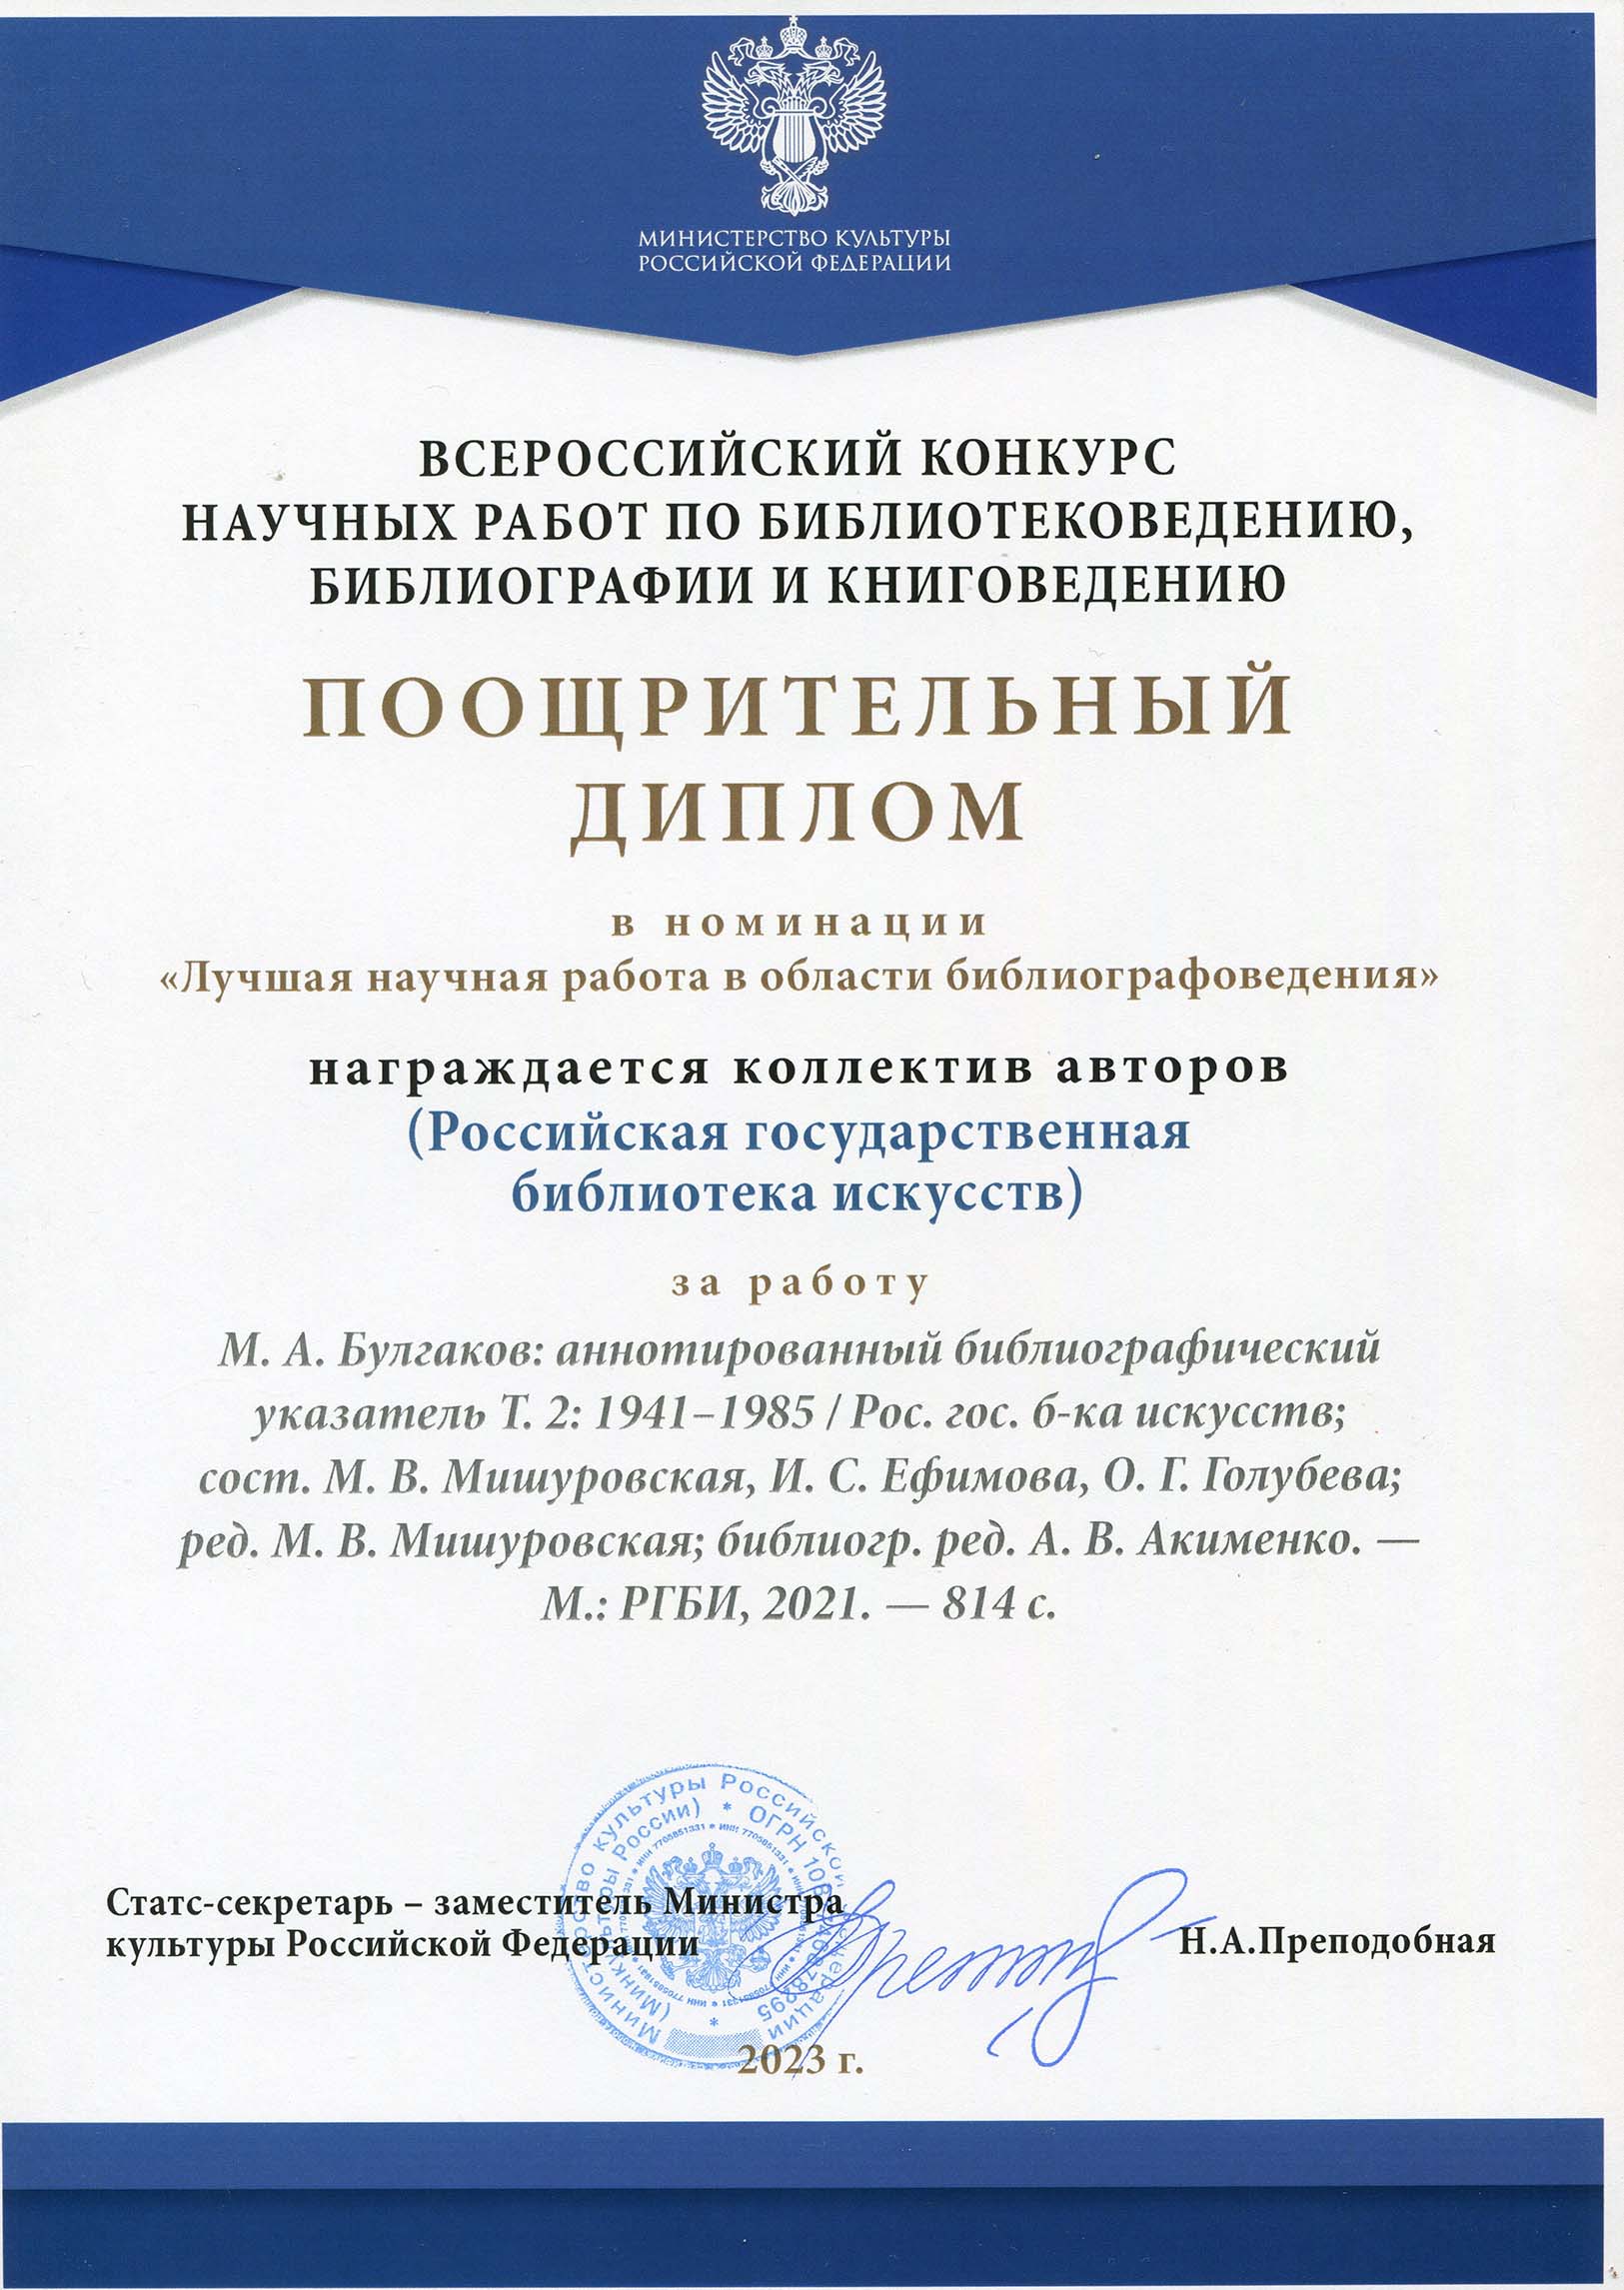 РГБИ получила диплом Всероссийского конкурса научных работ по библиотековедению, библиографии и книговедению